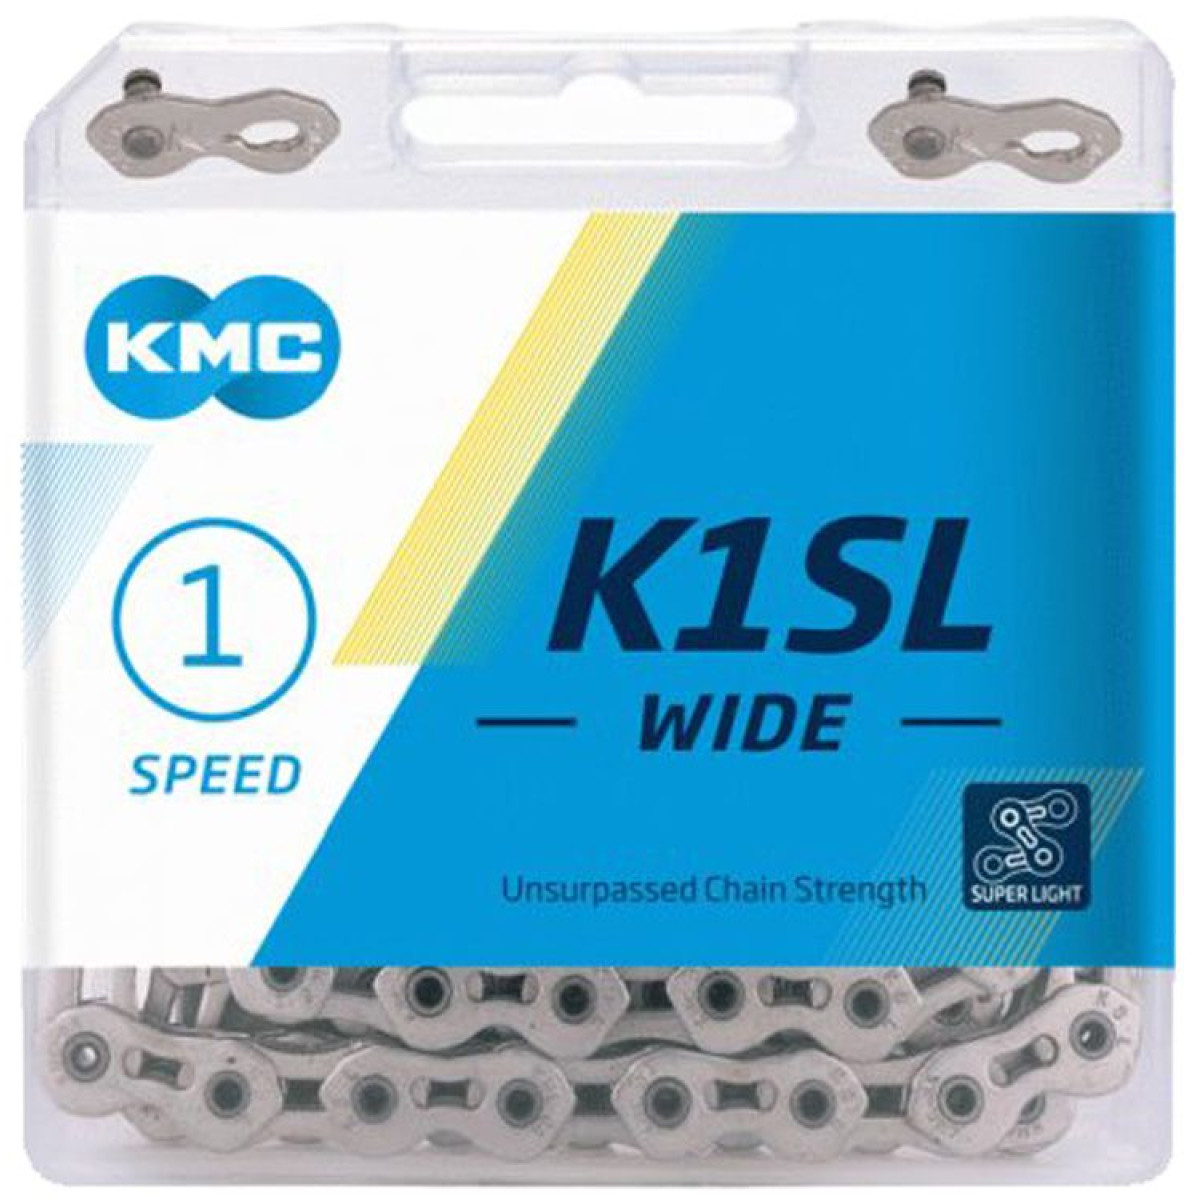 KMC K1SL Wide grandinė / 1 pavaros / Silver